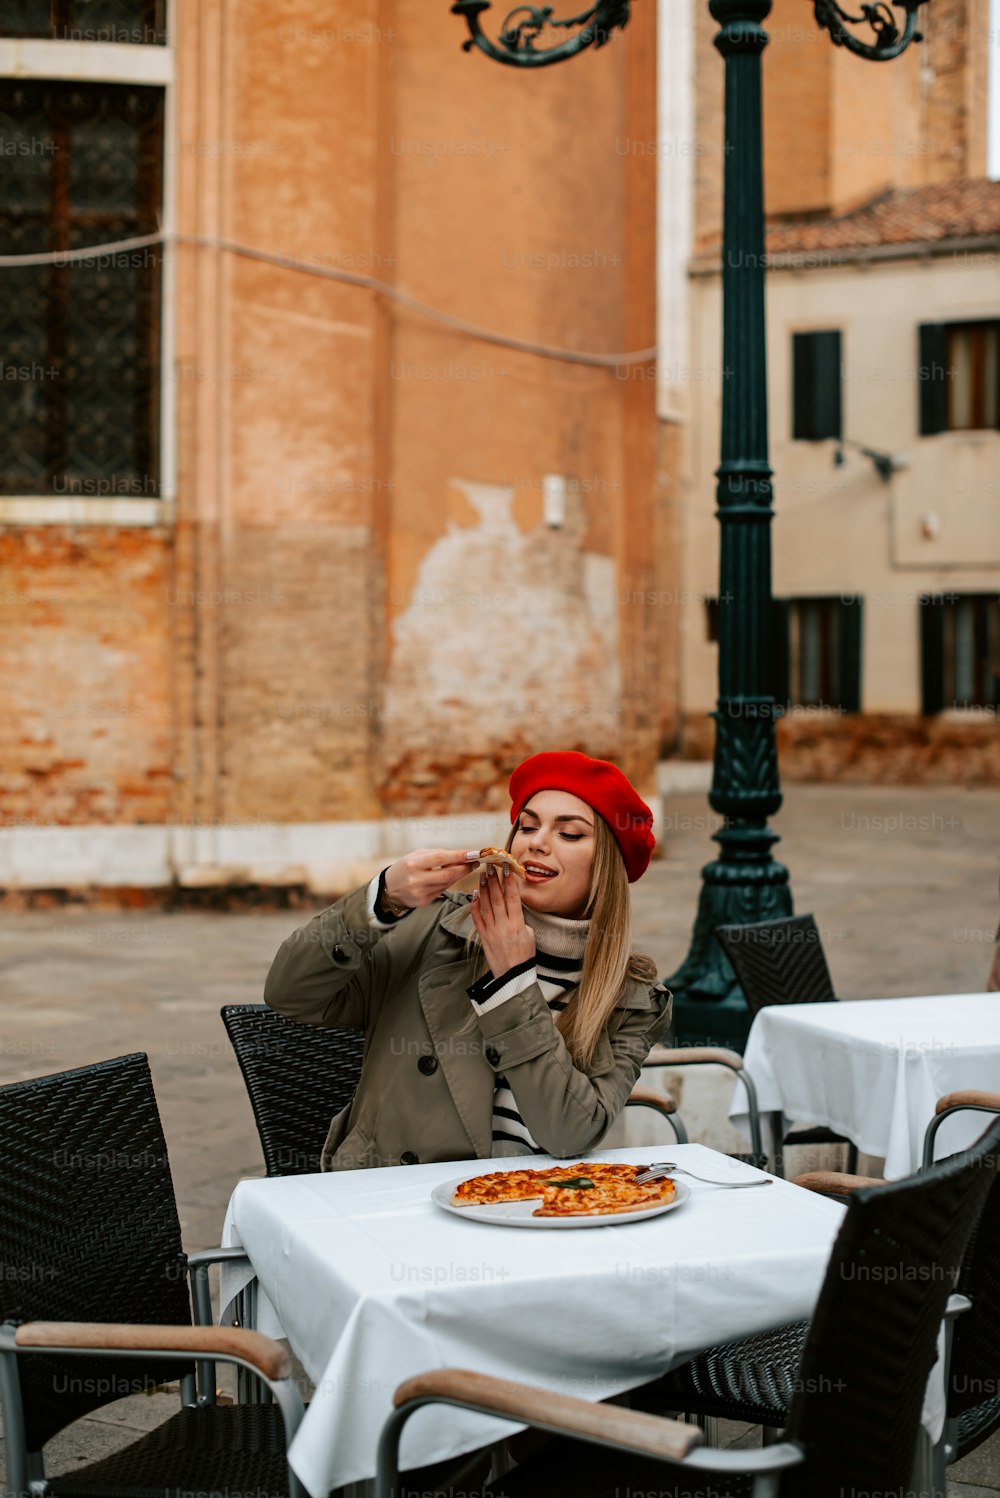 une femme assise à une table avec une pizza devant elle